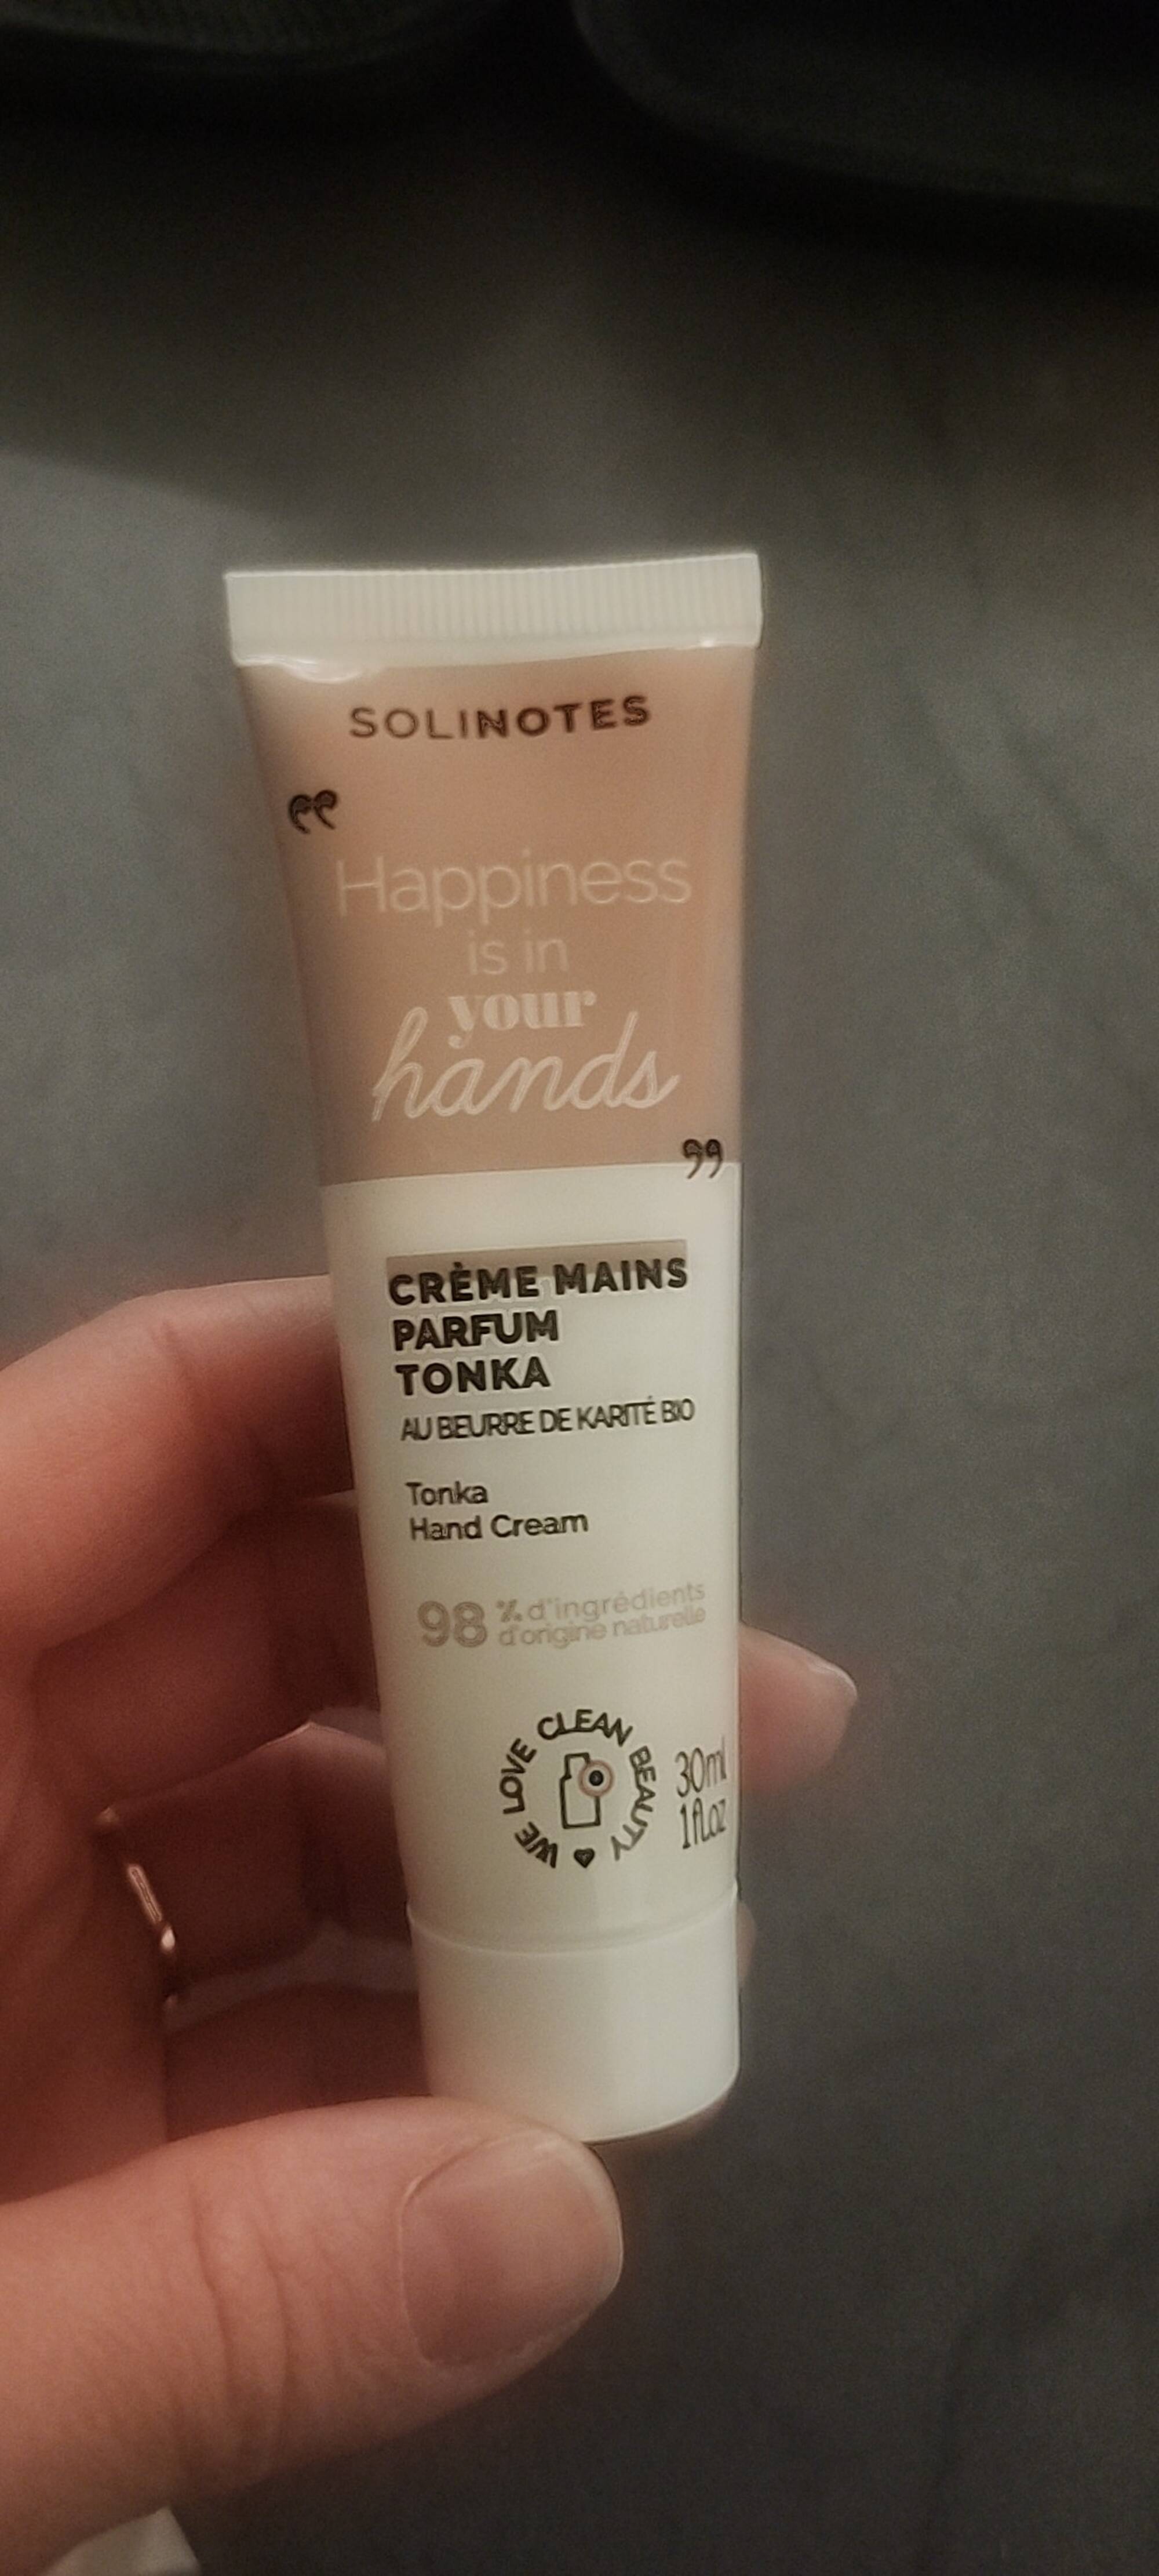 SOLINOTES - Tonka - Crème mains parfum